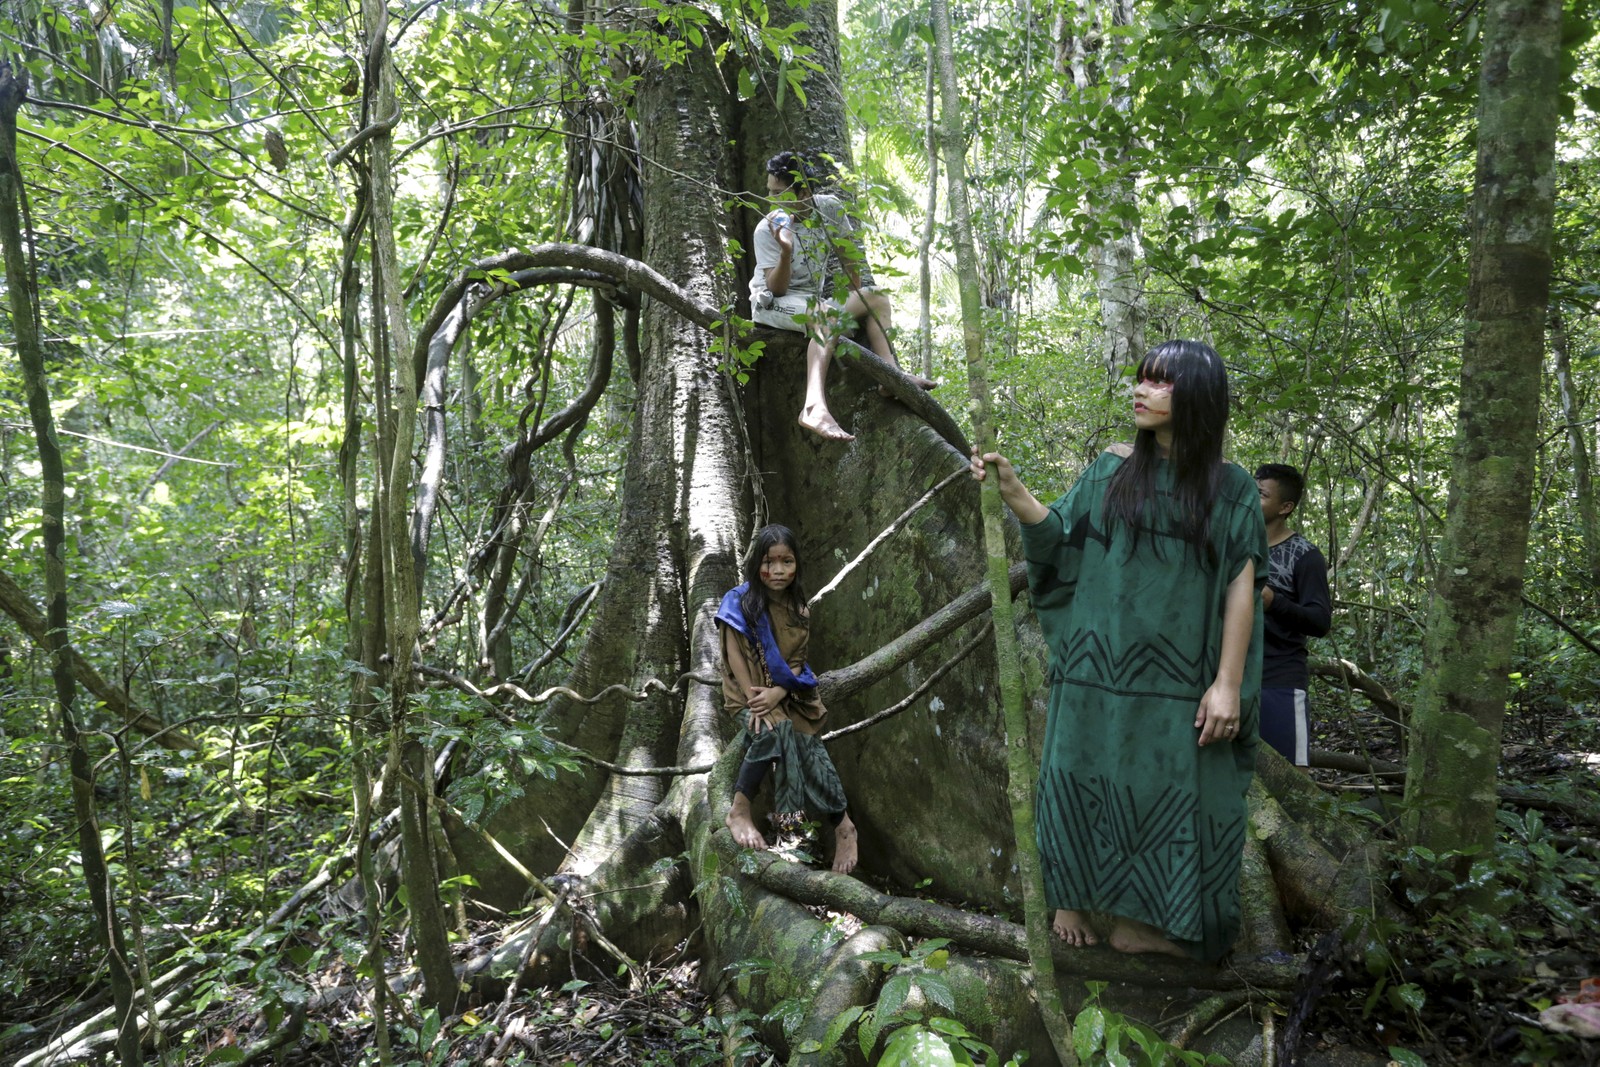 Jovens ashaninkas têm uma relação familiar com as árvores da floresta amazônica e aprendem desde cedo a identificar as espécies da floresta 